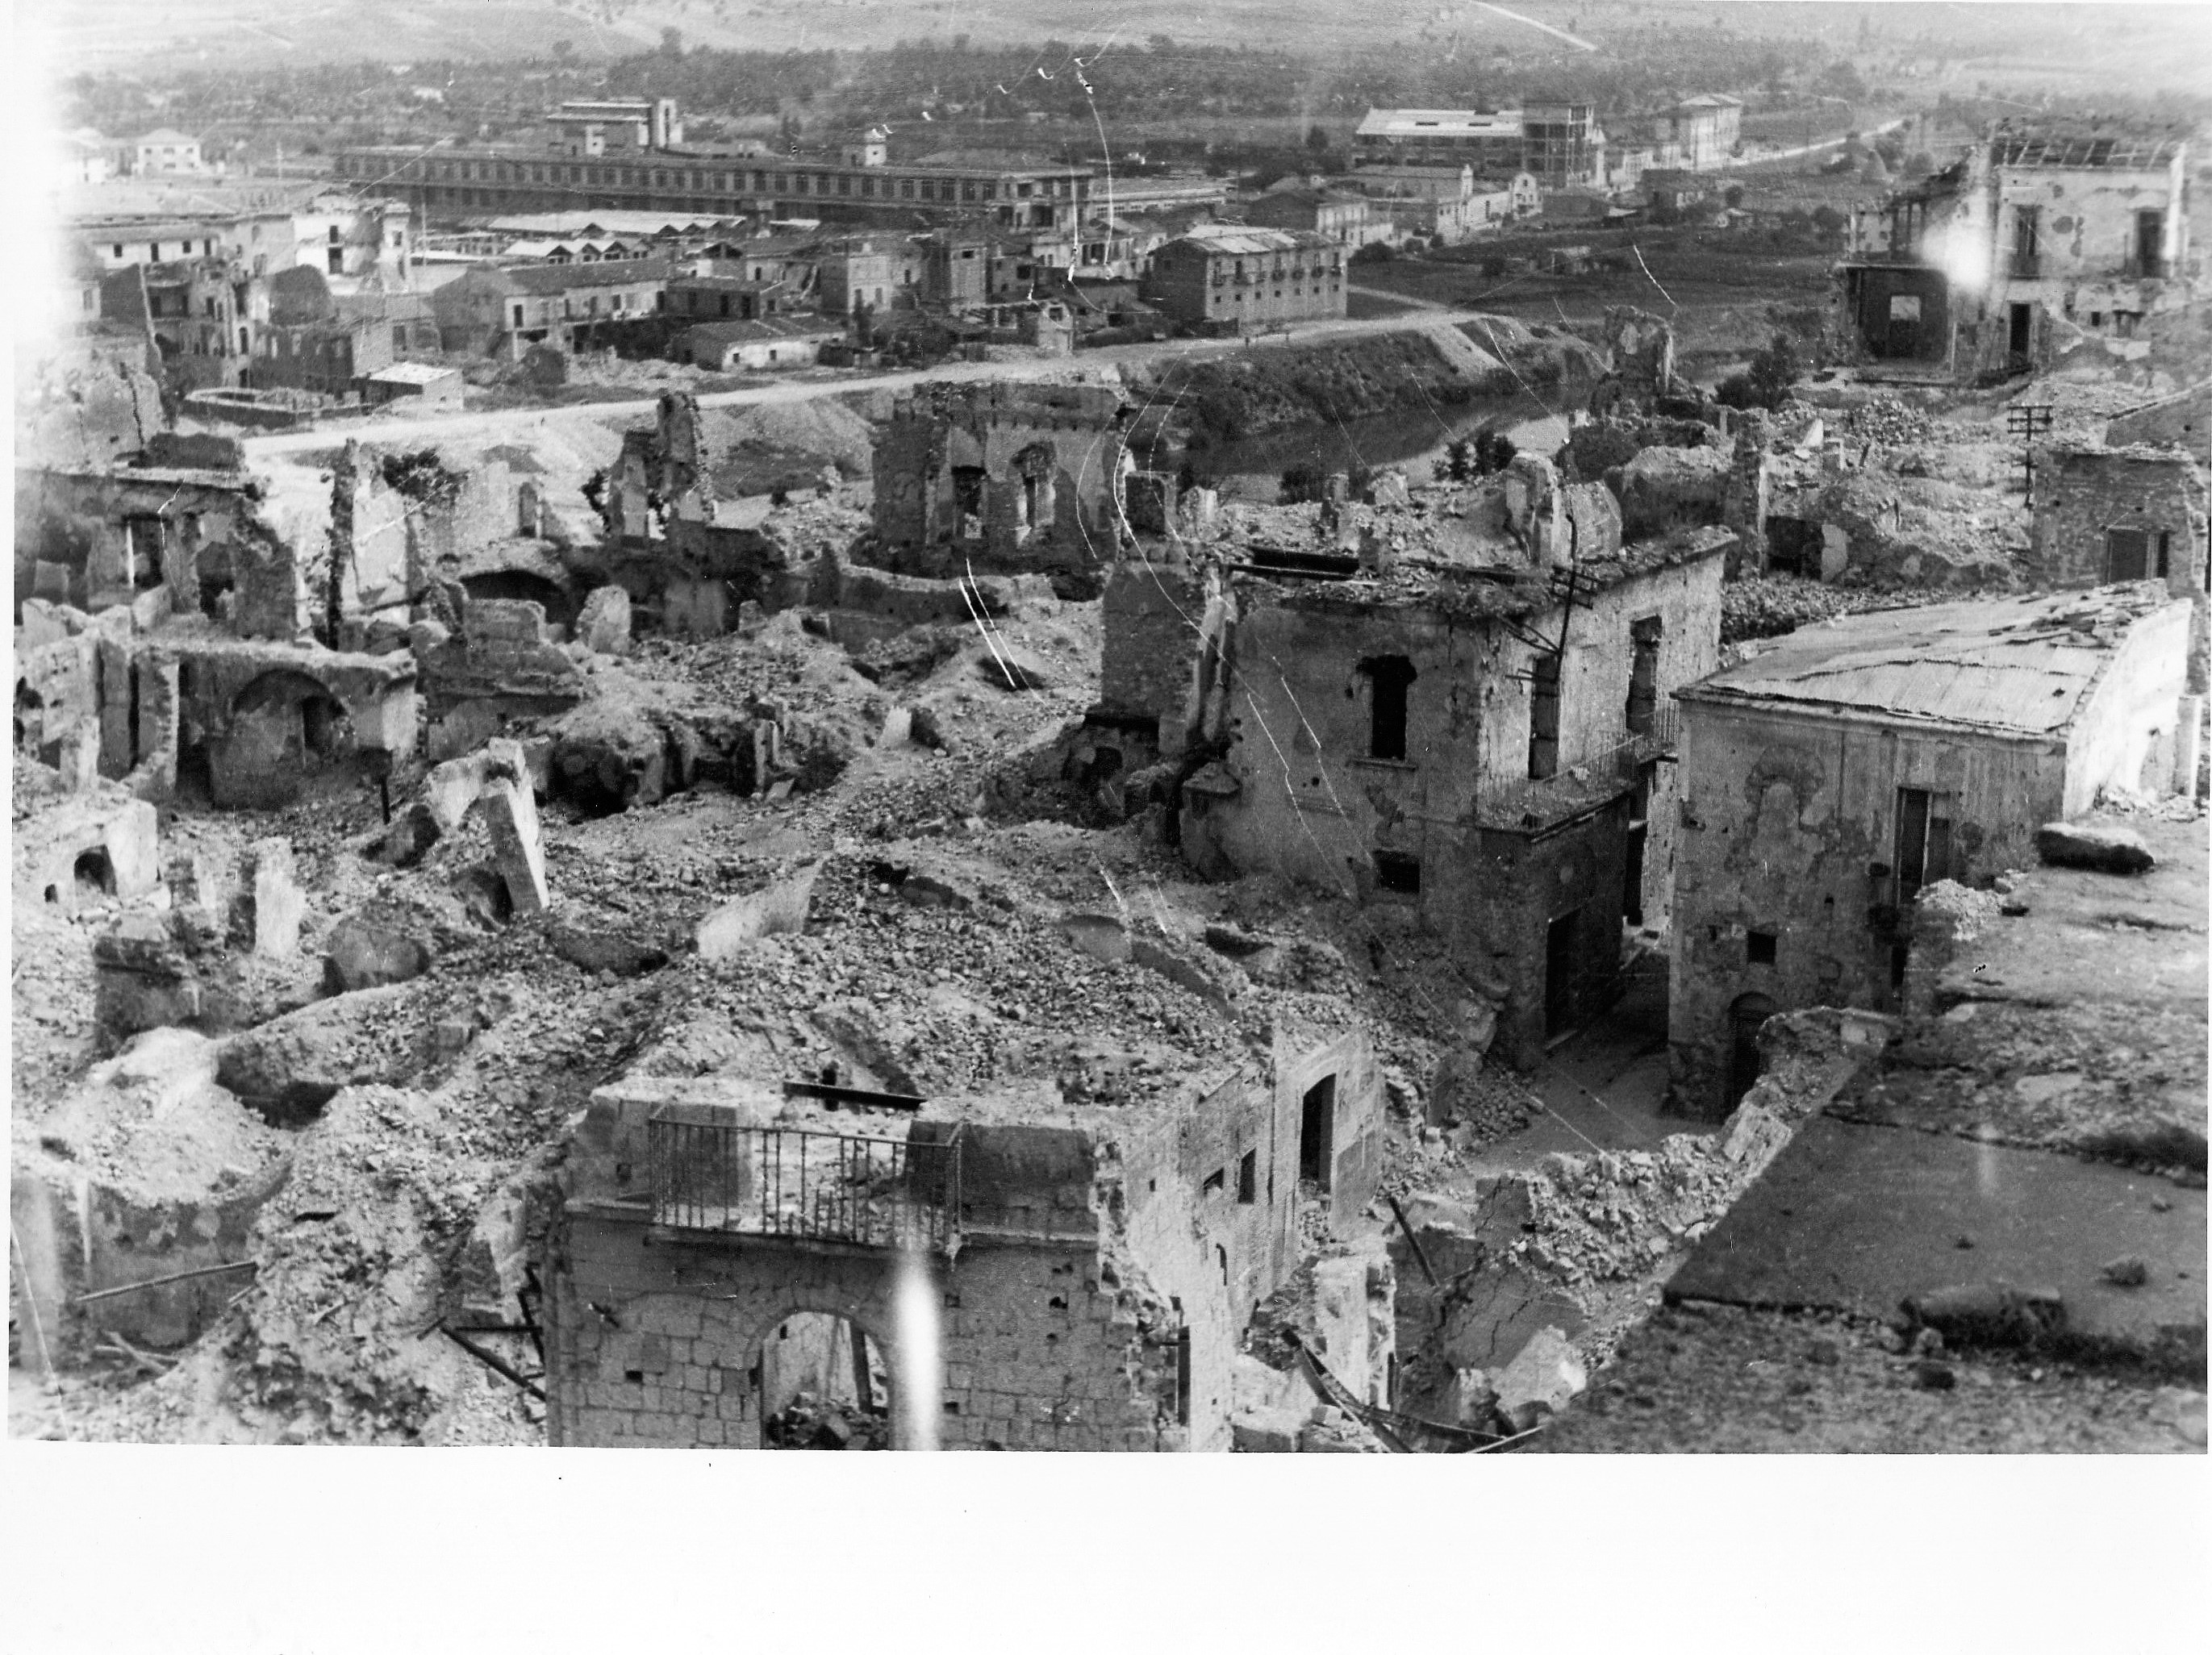 Benevento| Archeoclub,II Guerra Mondiale, un pensiero per le vittime